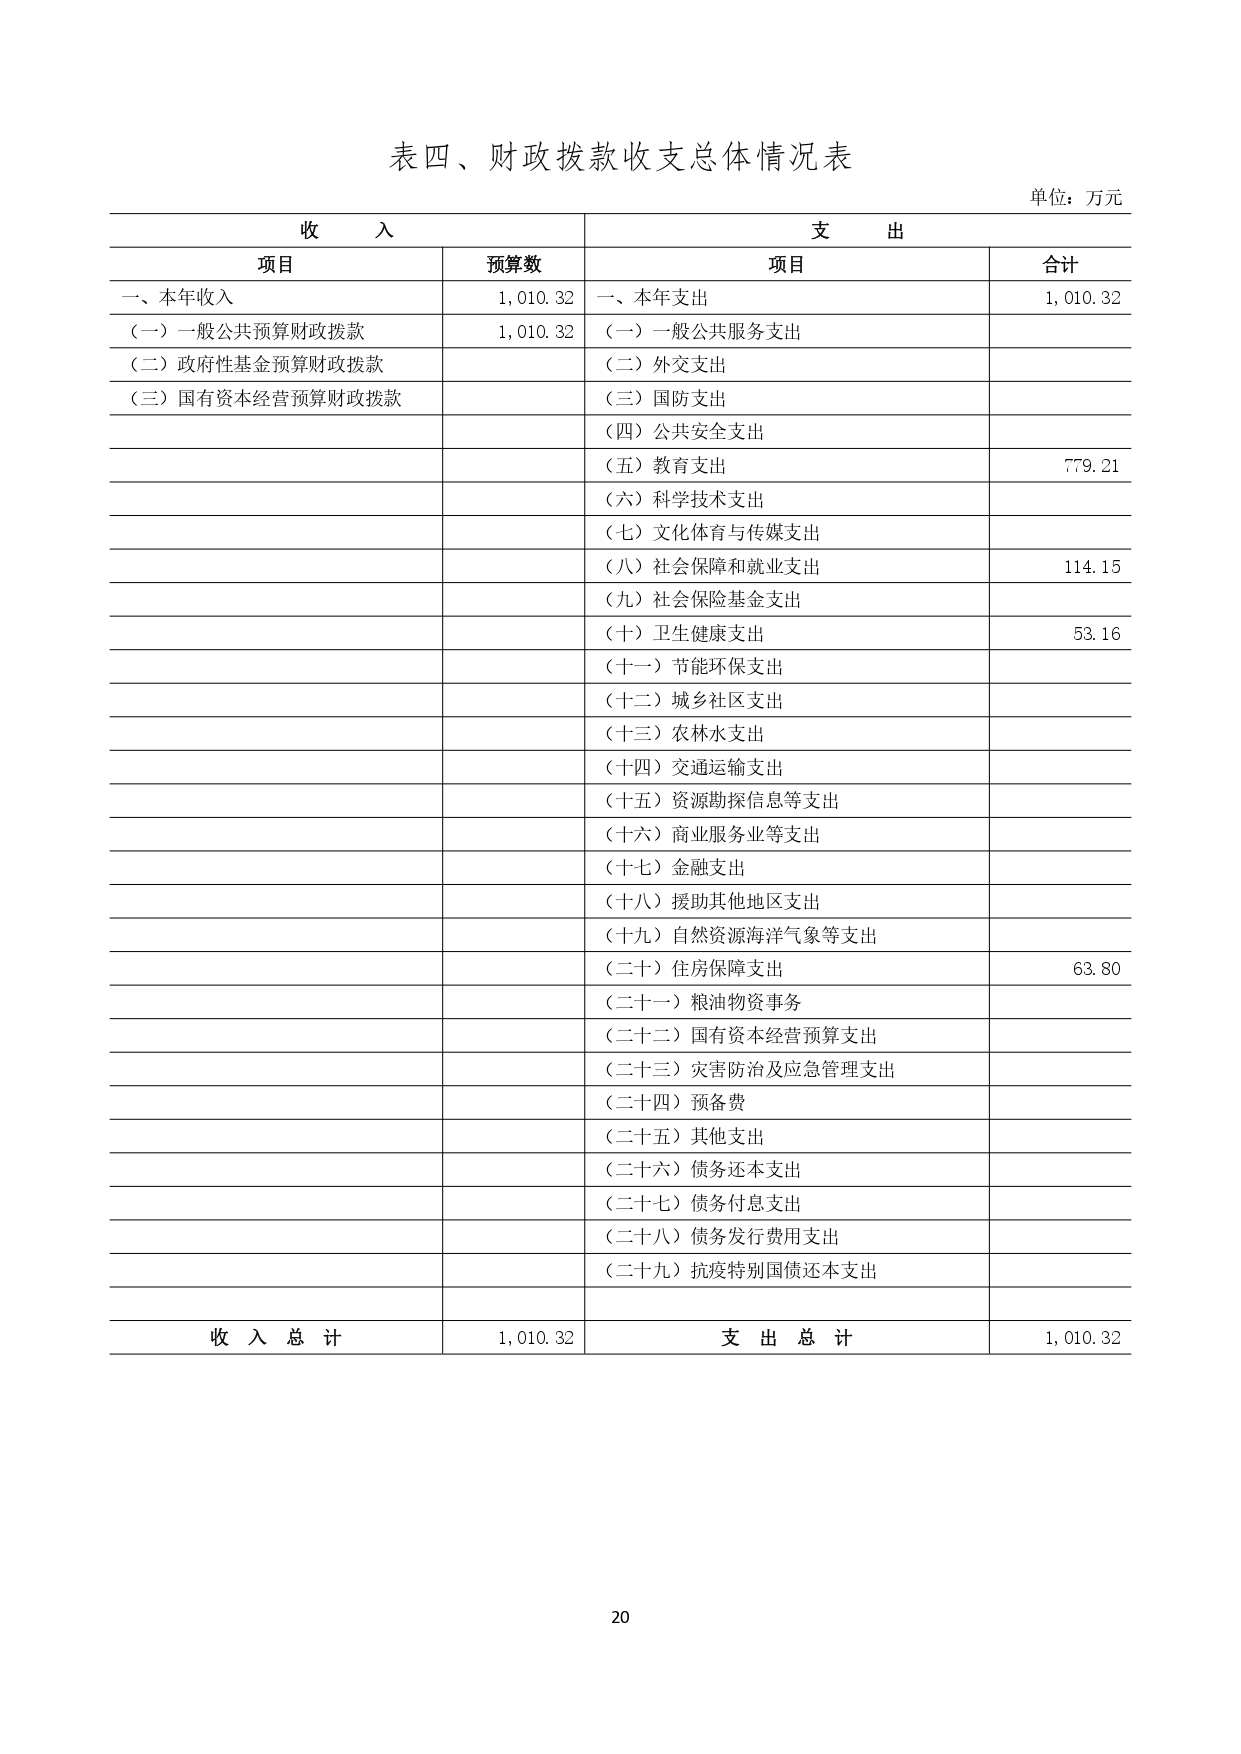 甘肃省广播电视学校2023年单位预算公开报告_page-0021.jpg